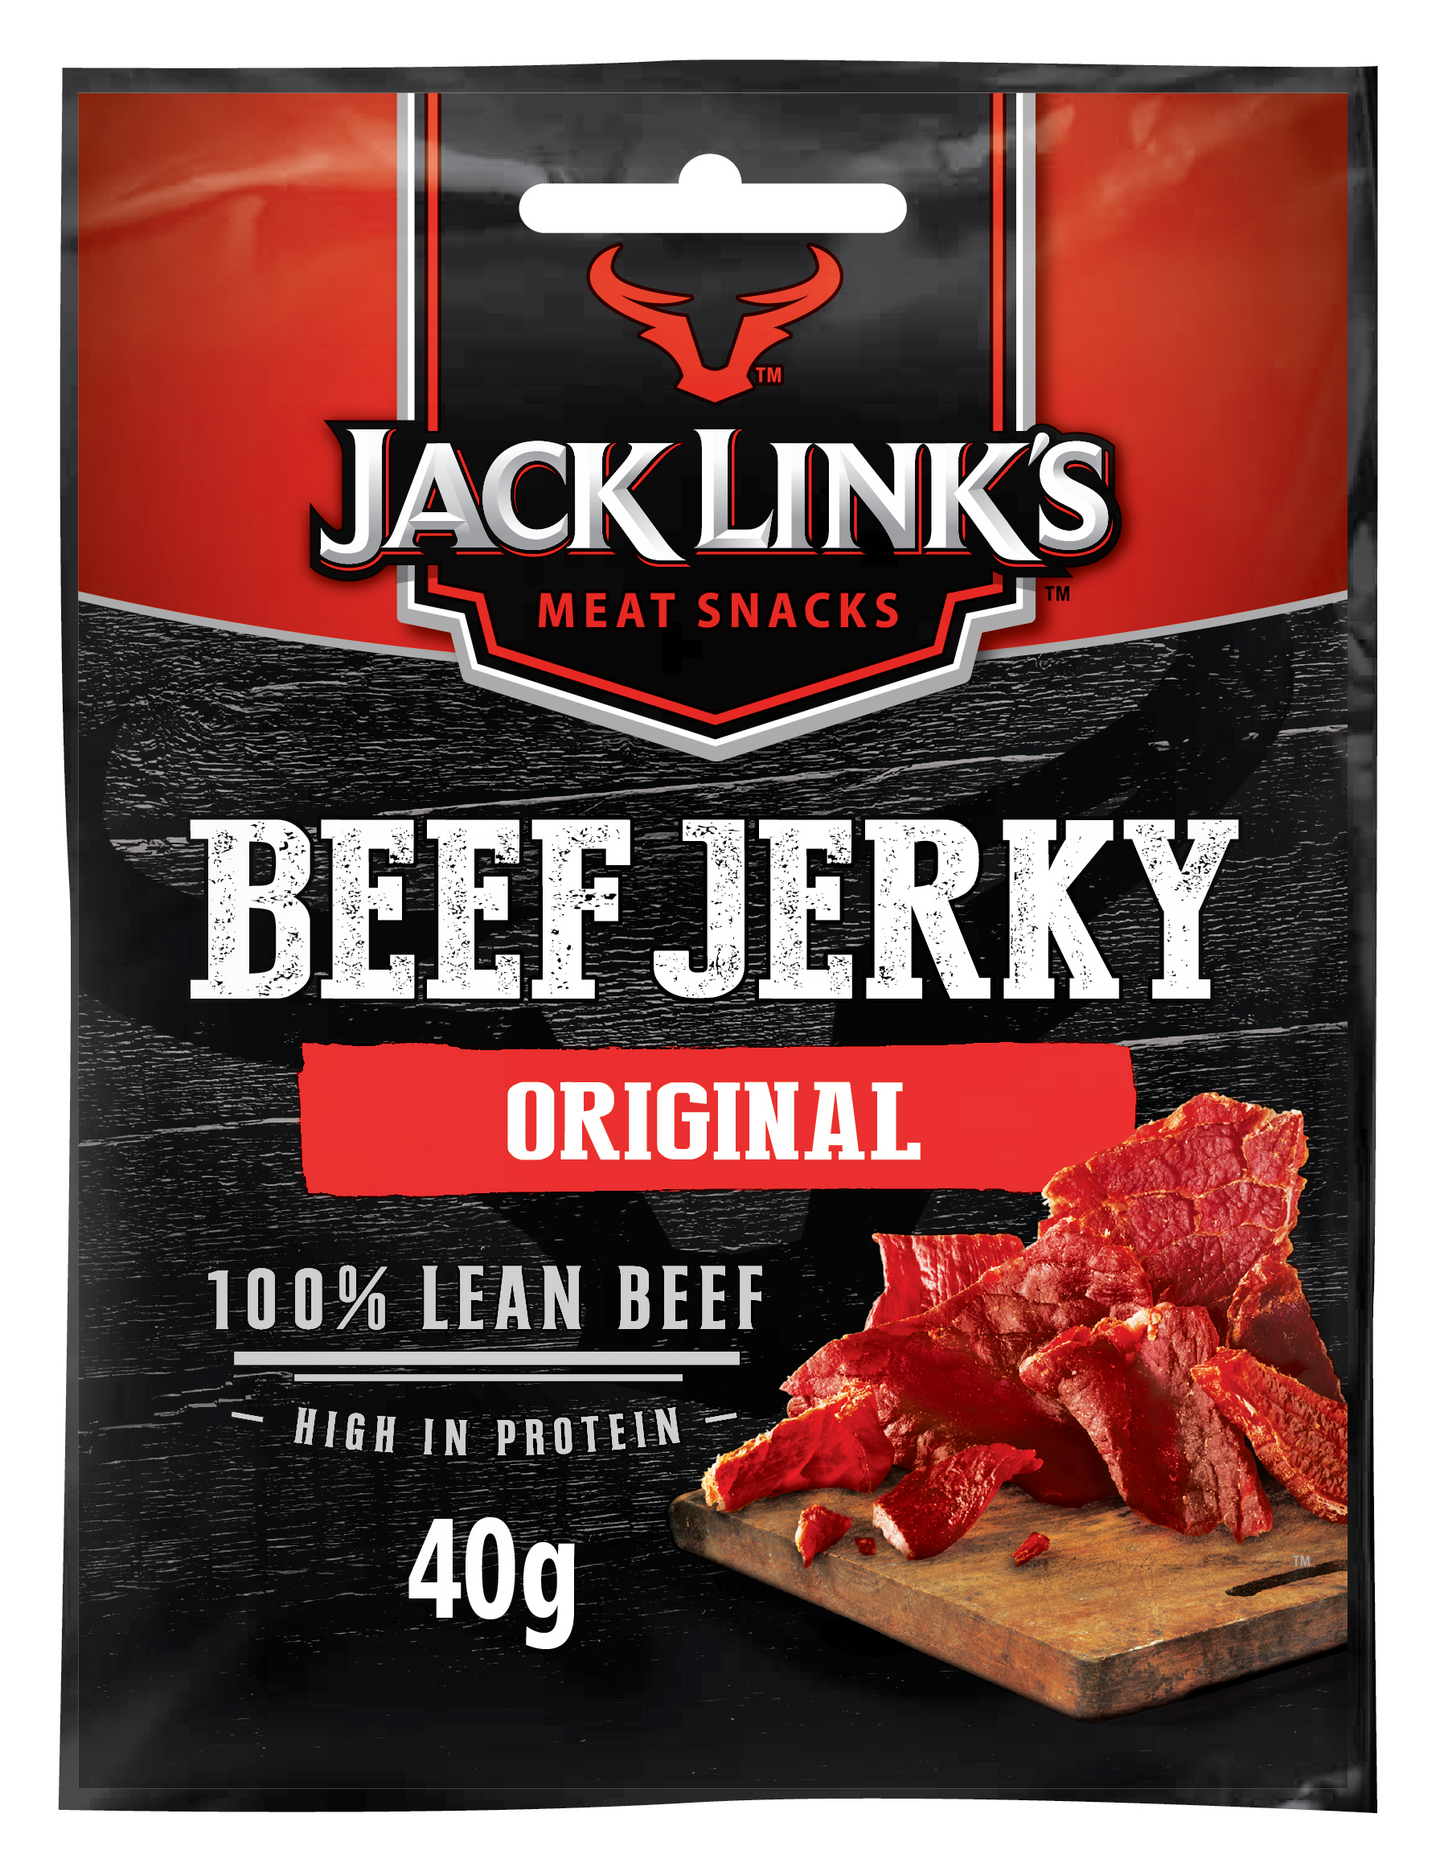 Jack Link's 40g Beef Jerky Original